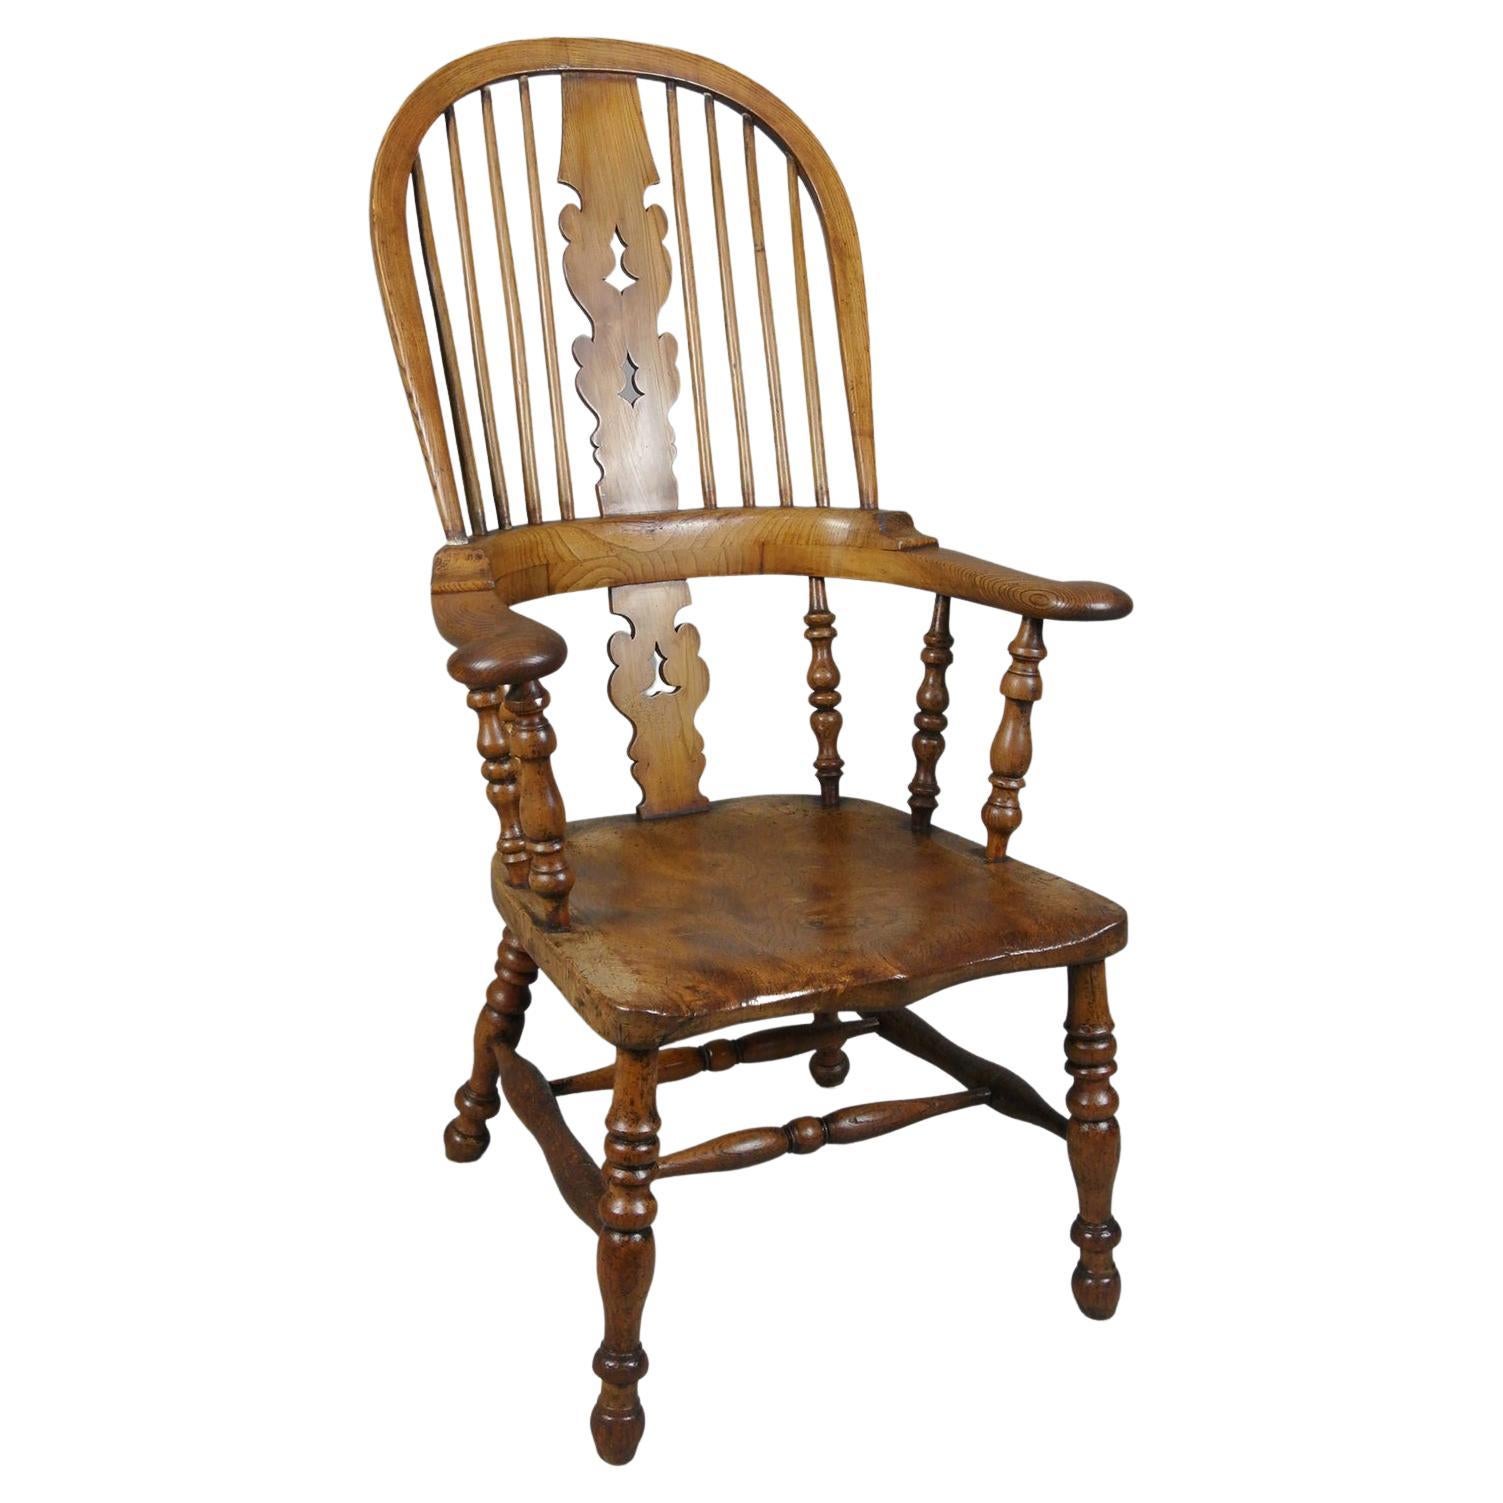 Seltener Windsor-Stuhl aus Eibenholz, Ulme und Eschenholz, 19. Jahrhundert, um 1850